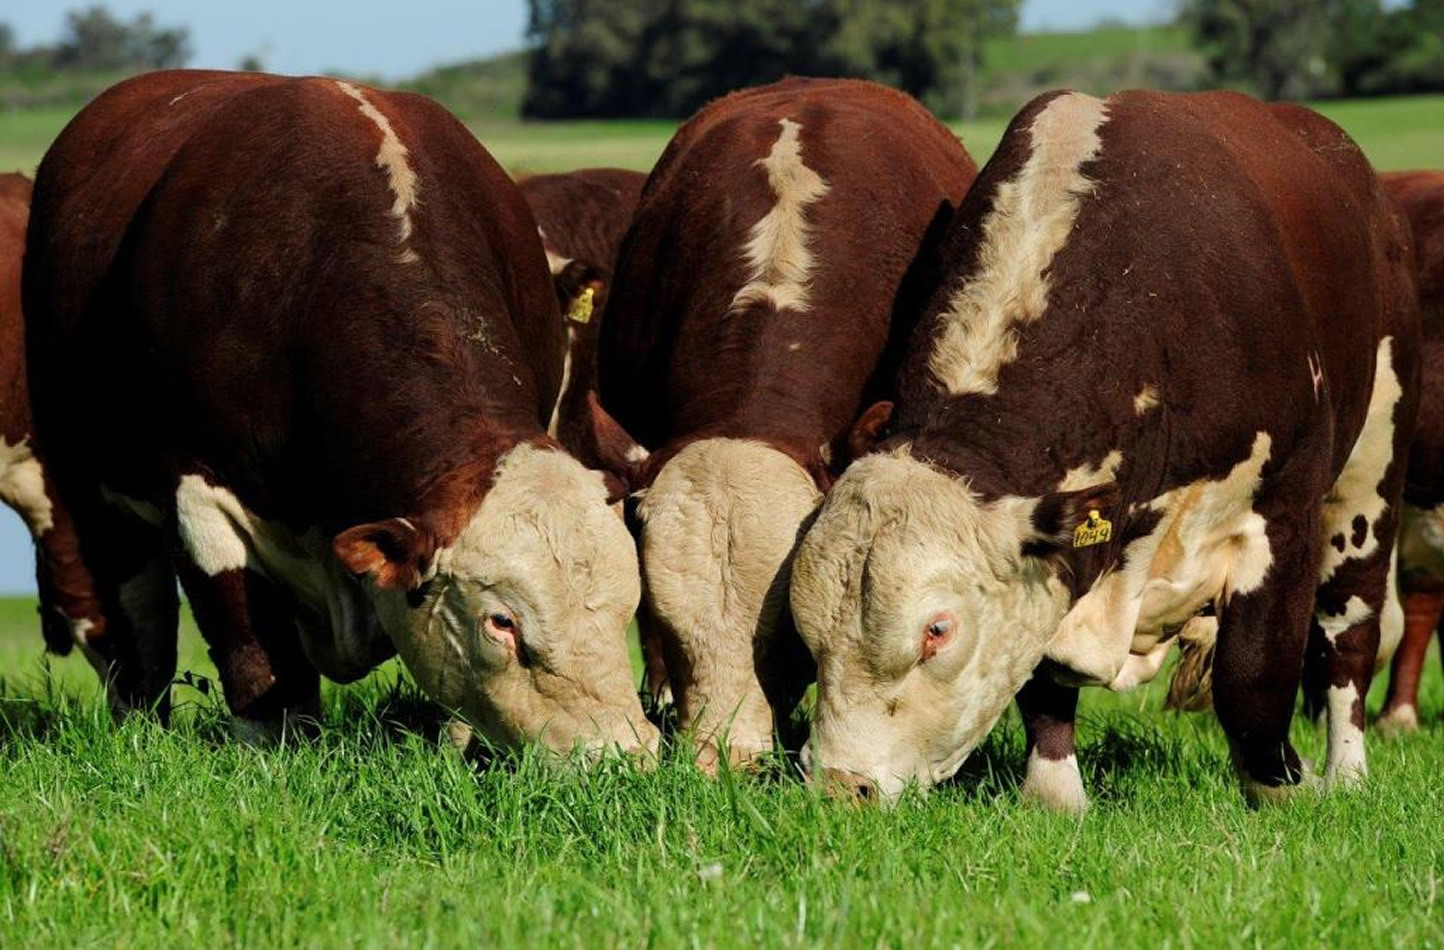 Embrapa reforça pesquisa genômica para controlar carrapatos em bovinos naturalmente